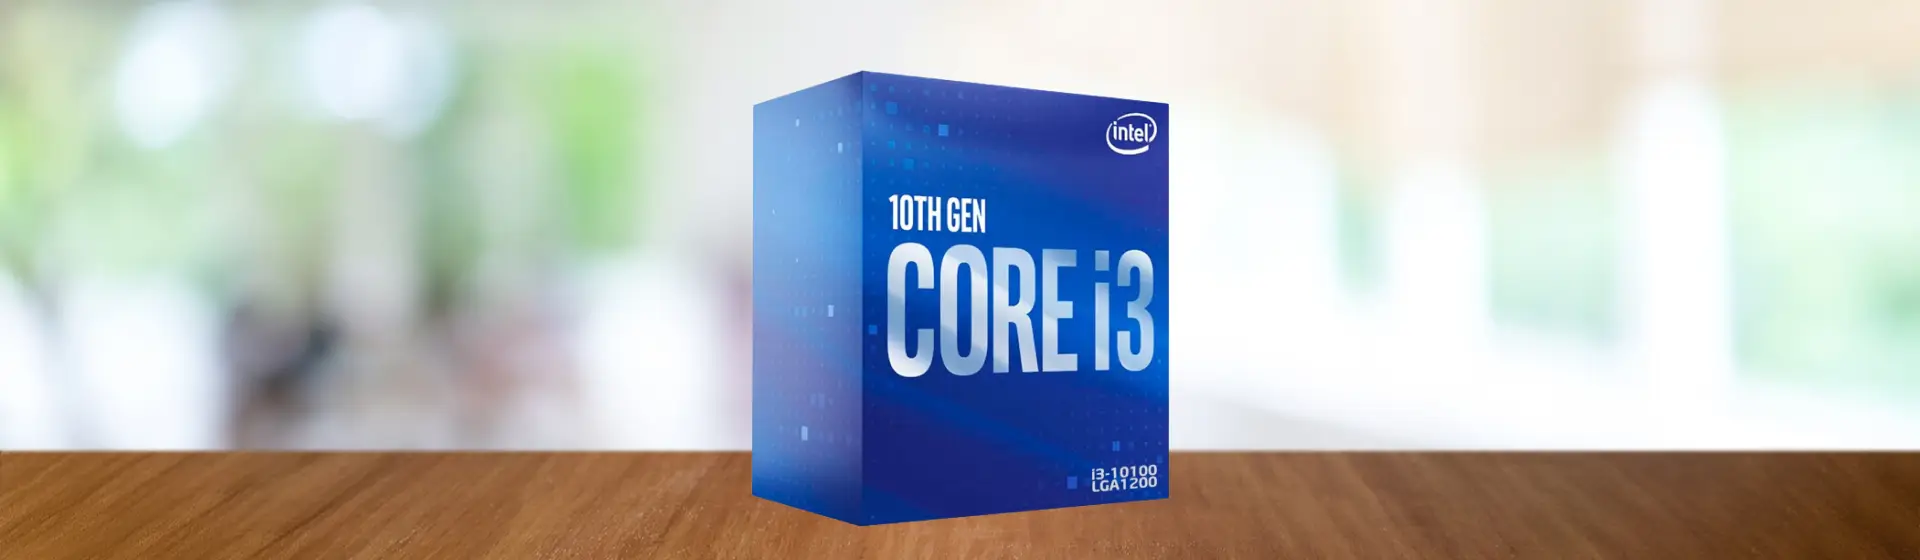 Processador Intel Core I3-10100f 10 Geracao 3.6ghz 6mb Lga1200 com